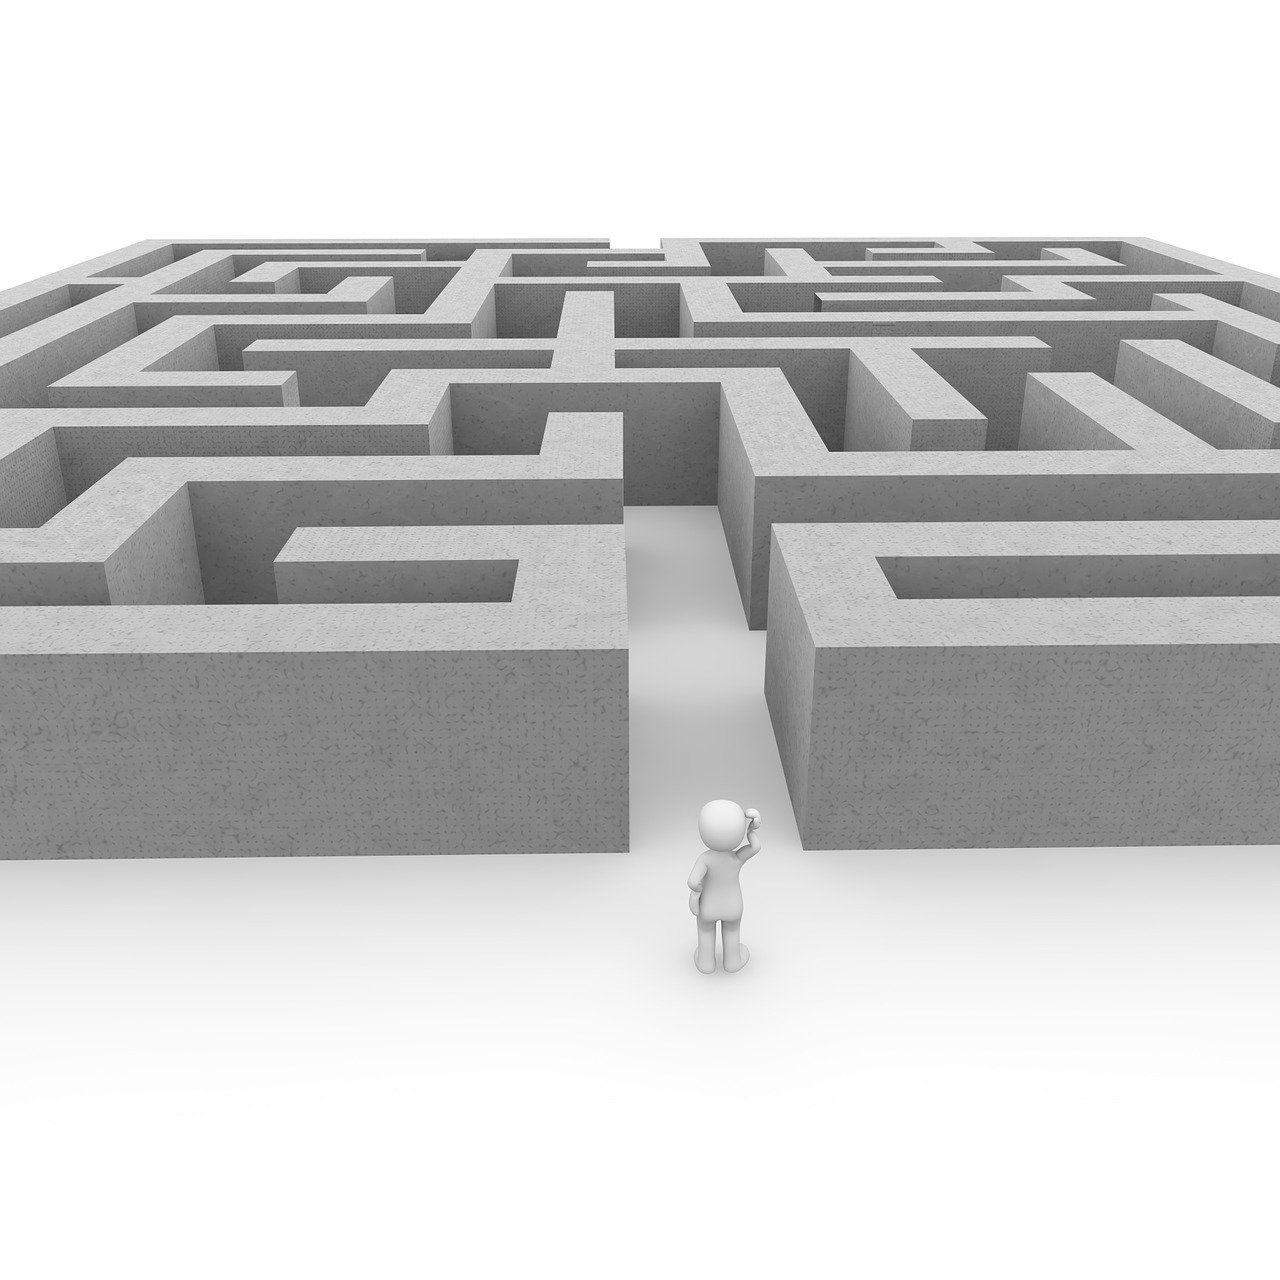 Lire la suite à propos de l’article Algorithme de labyrinthes